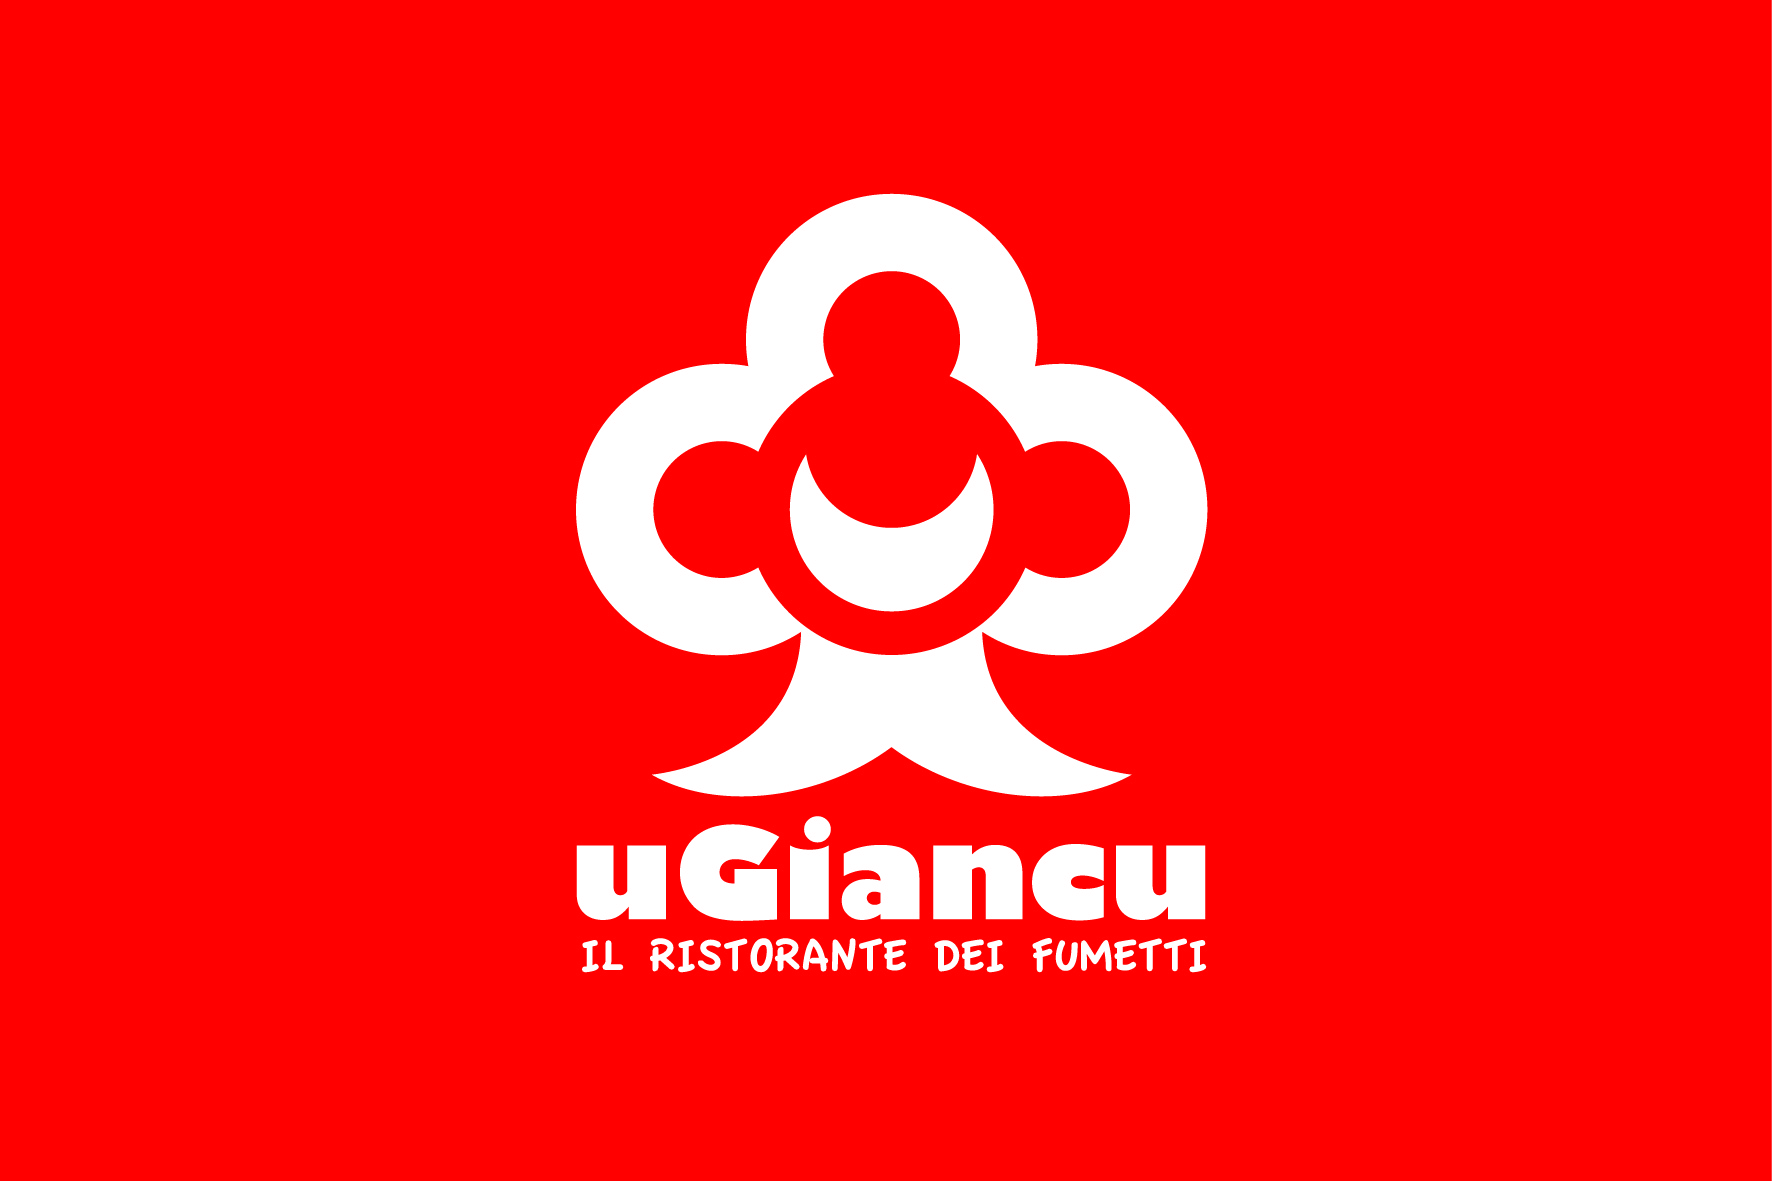 UGiancu-Ristorante-fumetti